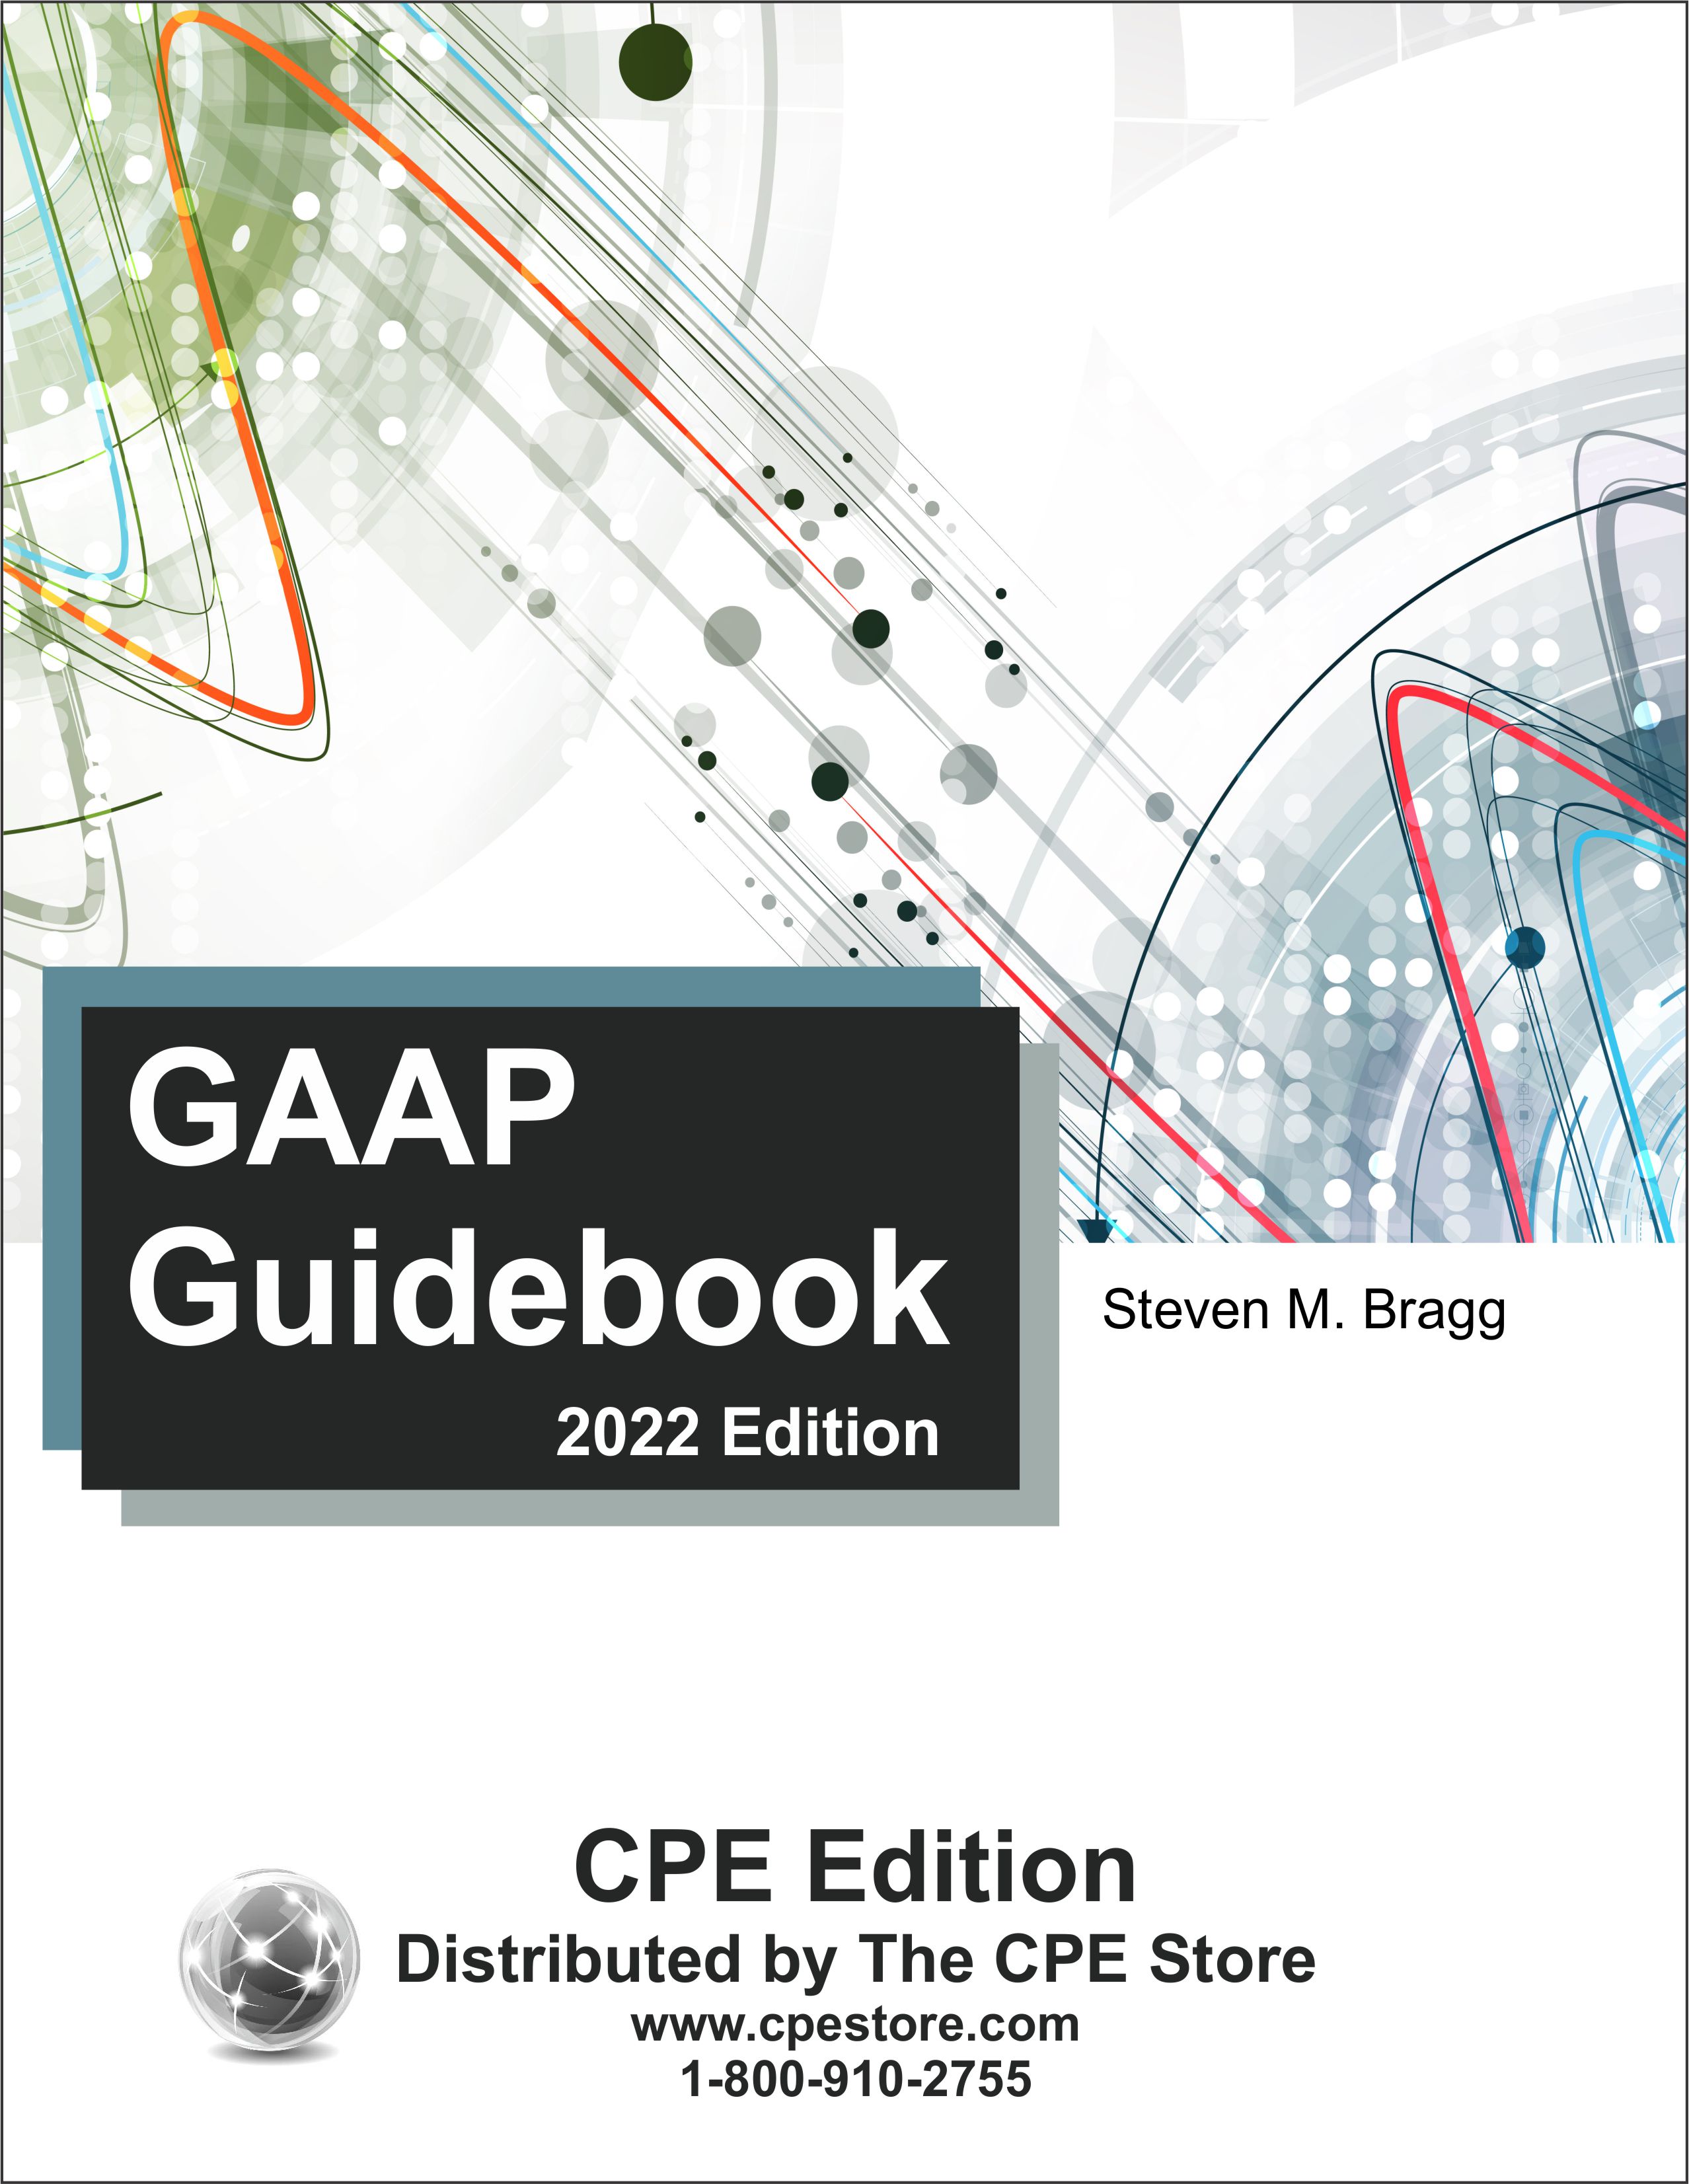 GAAP Guidebook 2022